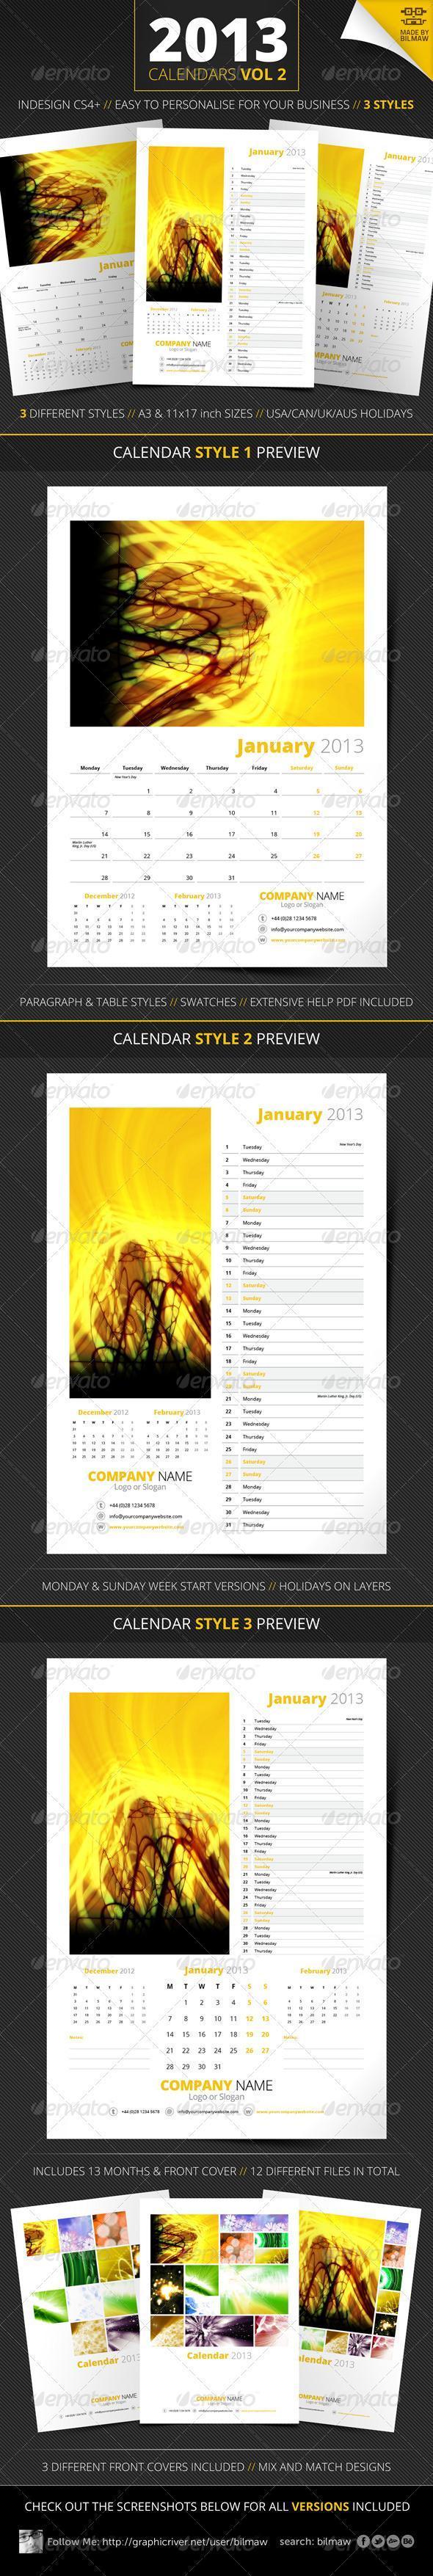 Calendar 2013 with Logo Templates